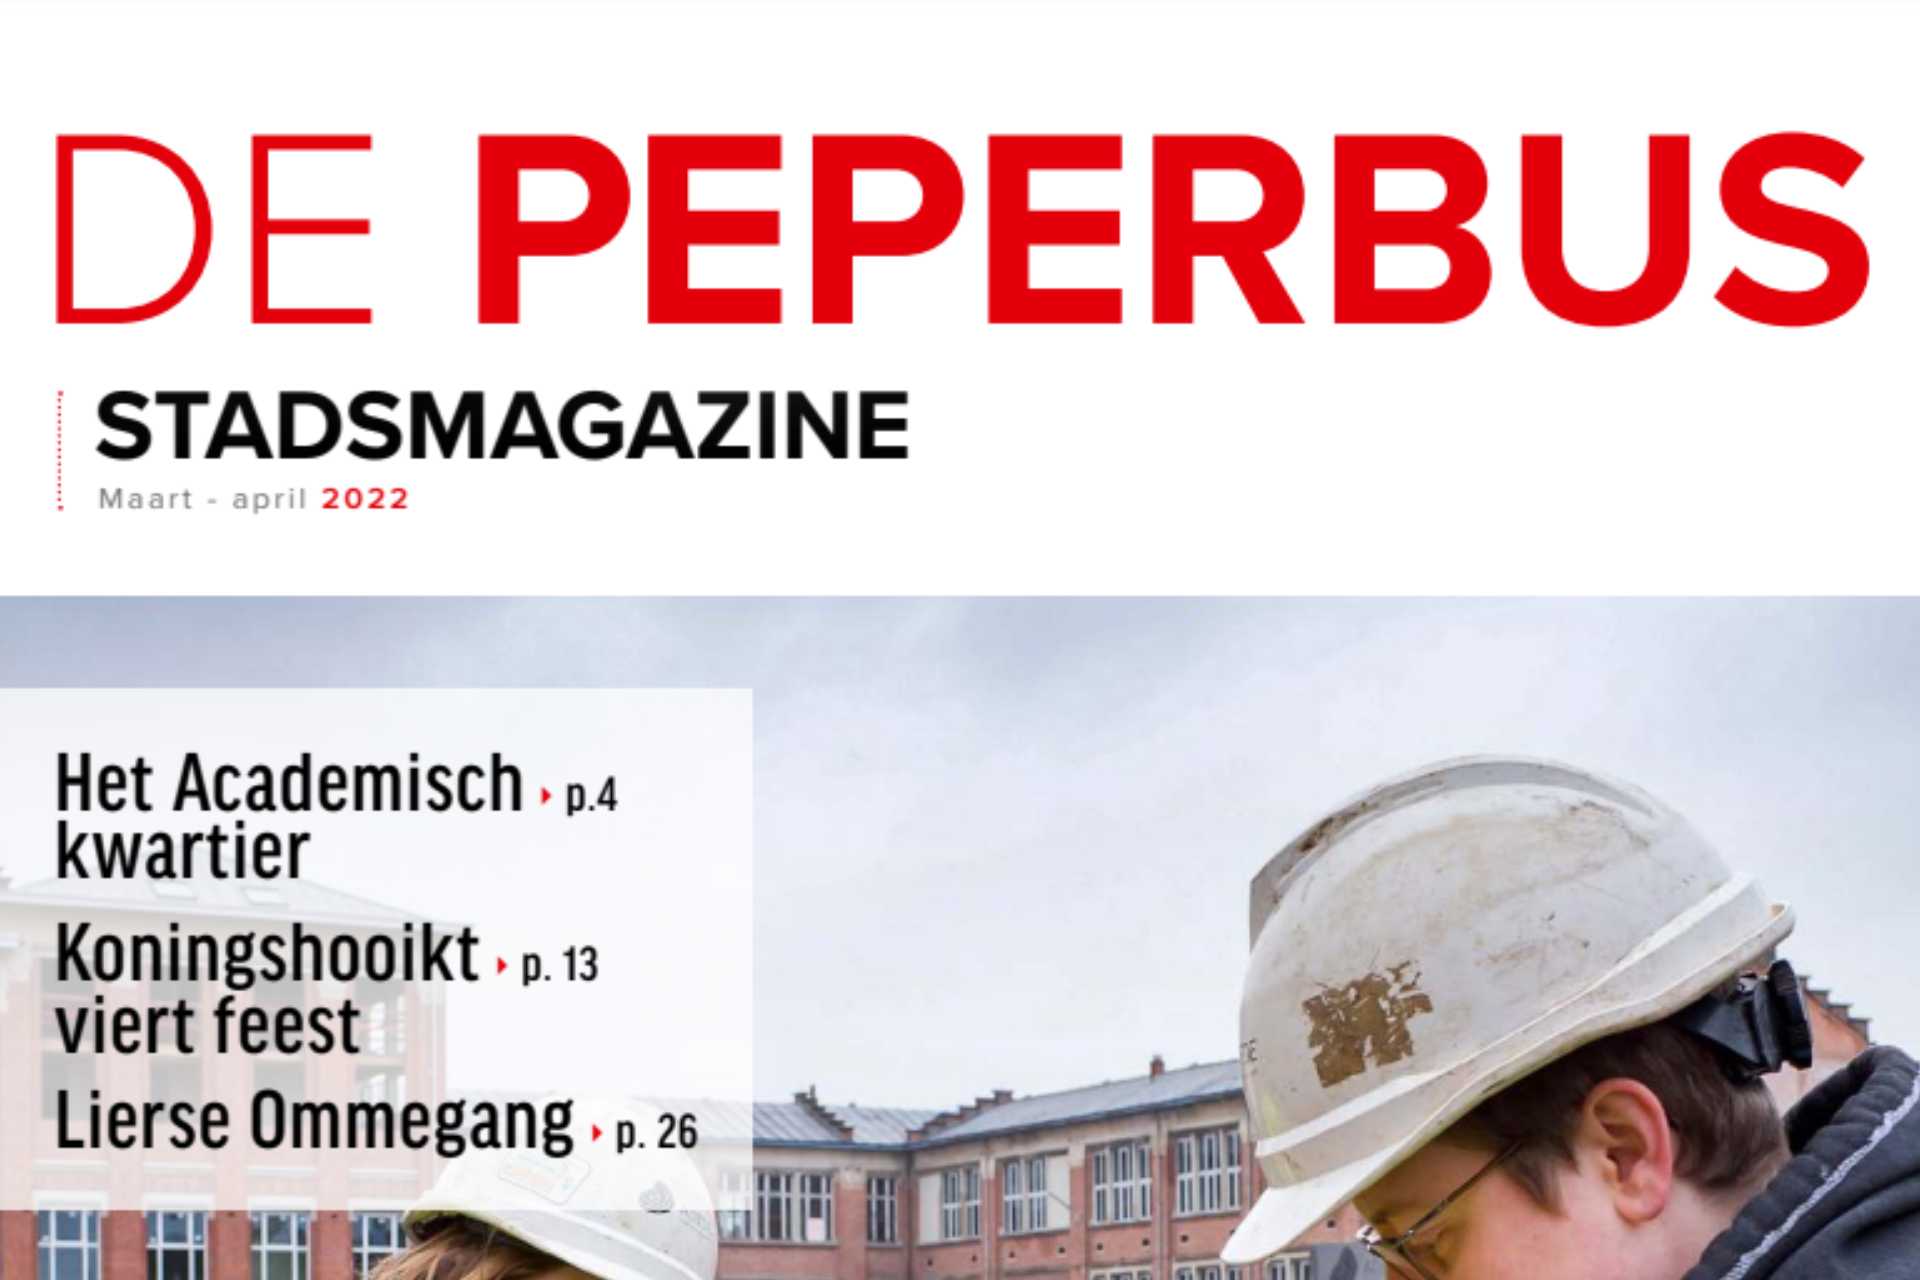 Het Academisch Kwartier in De Peperbus (stadsmagazine)